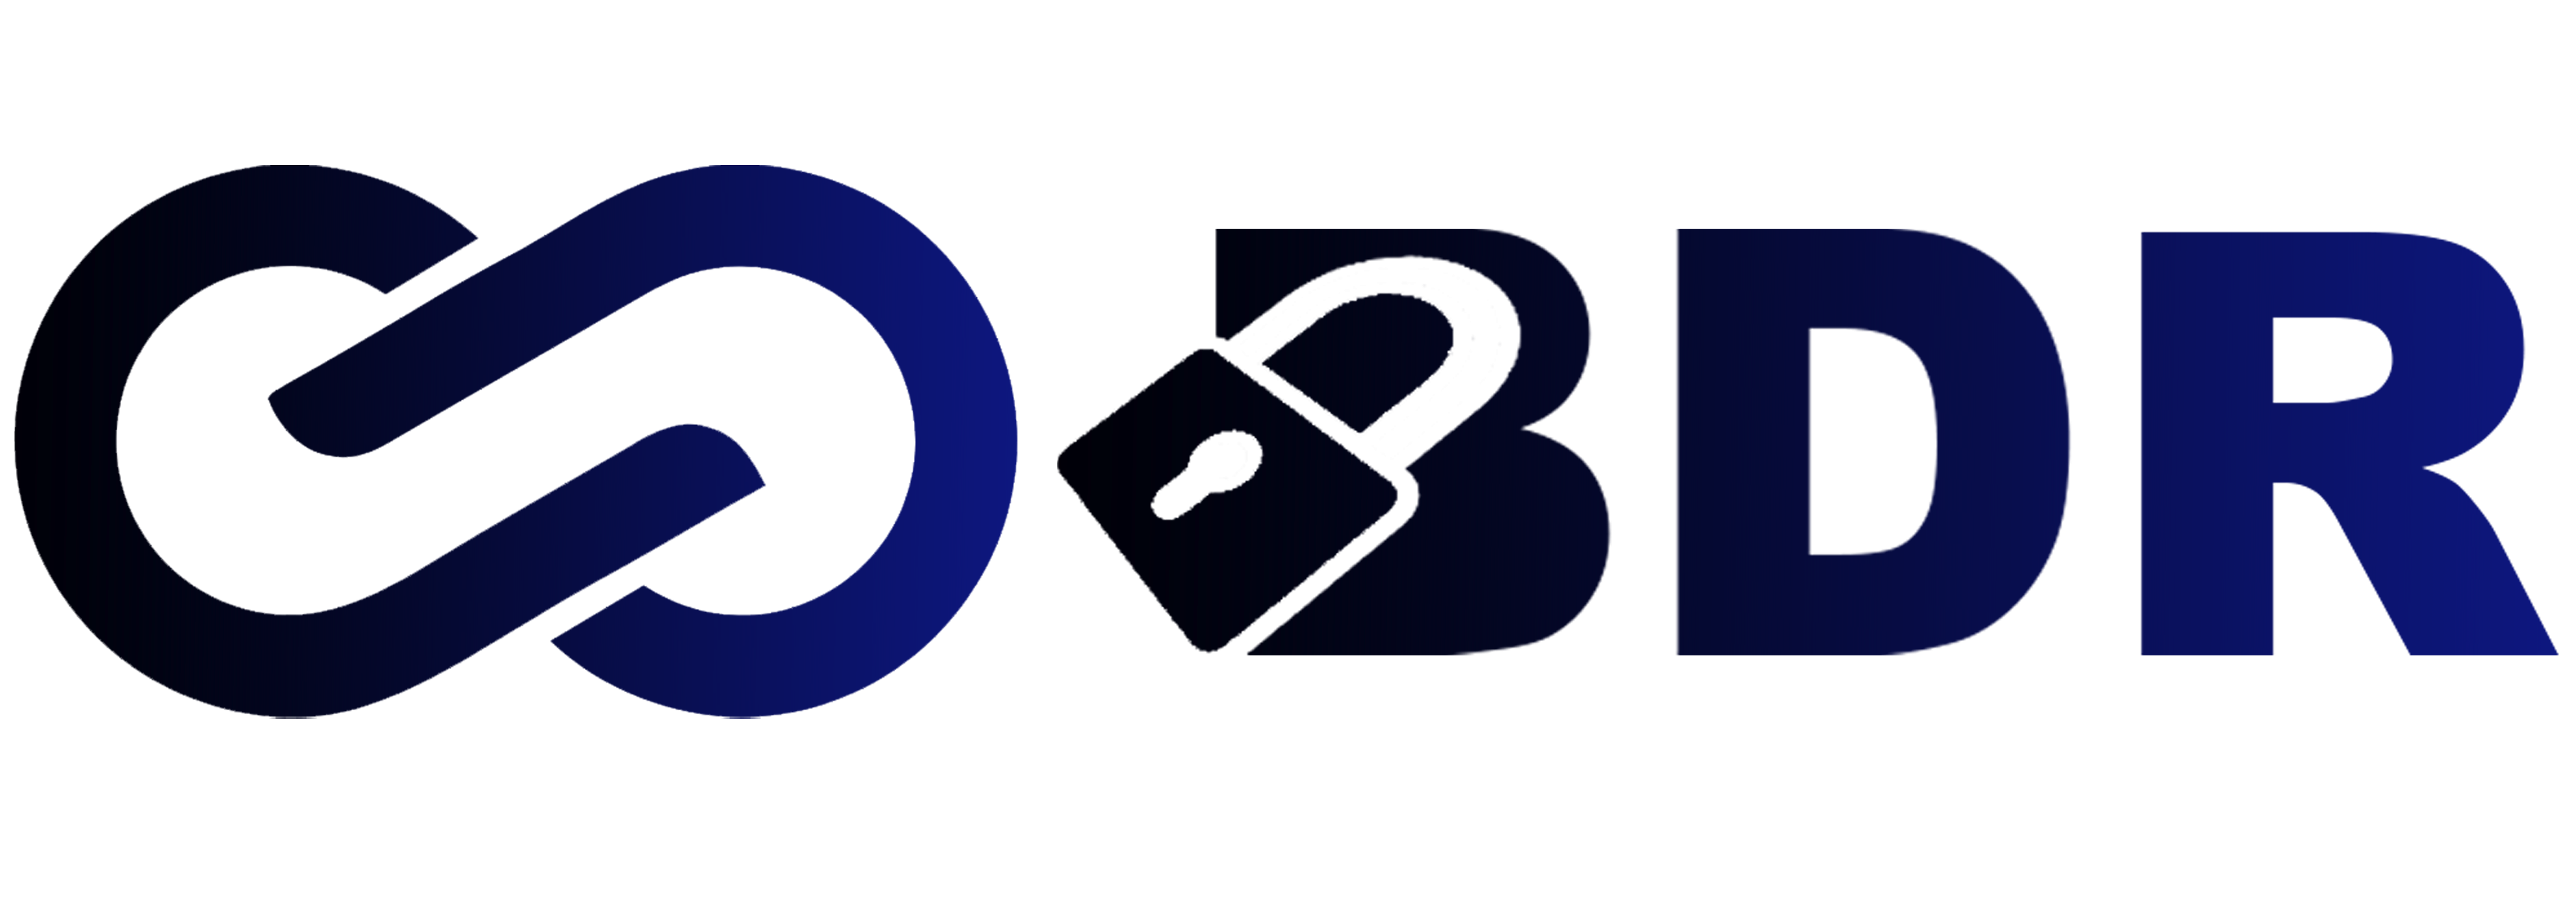 cropped-logo-BDR-1.png